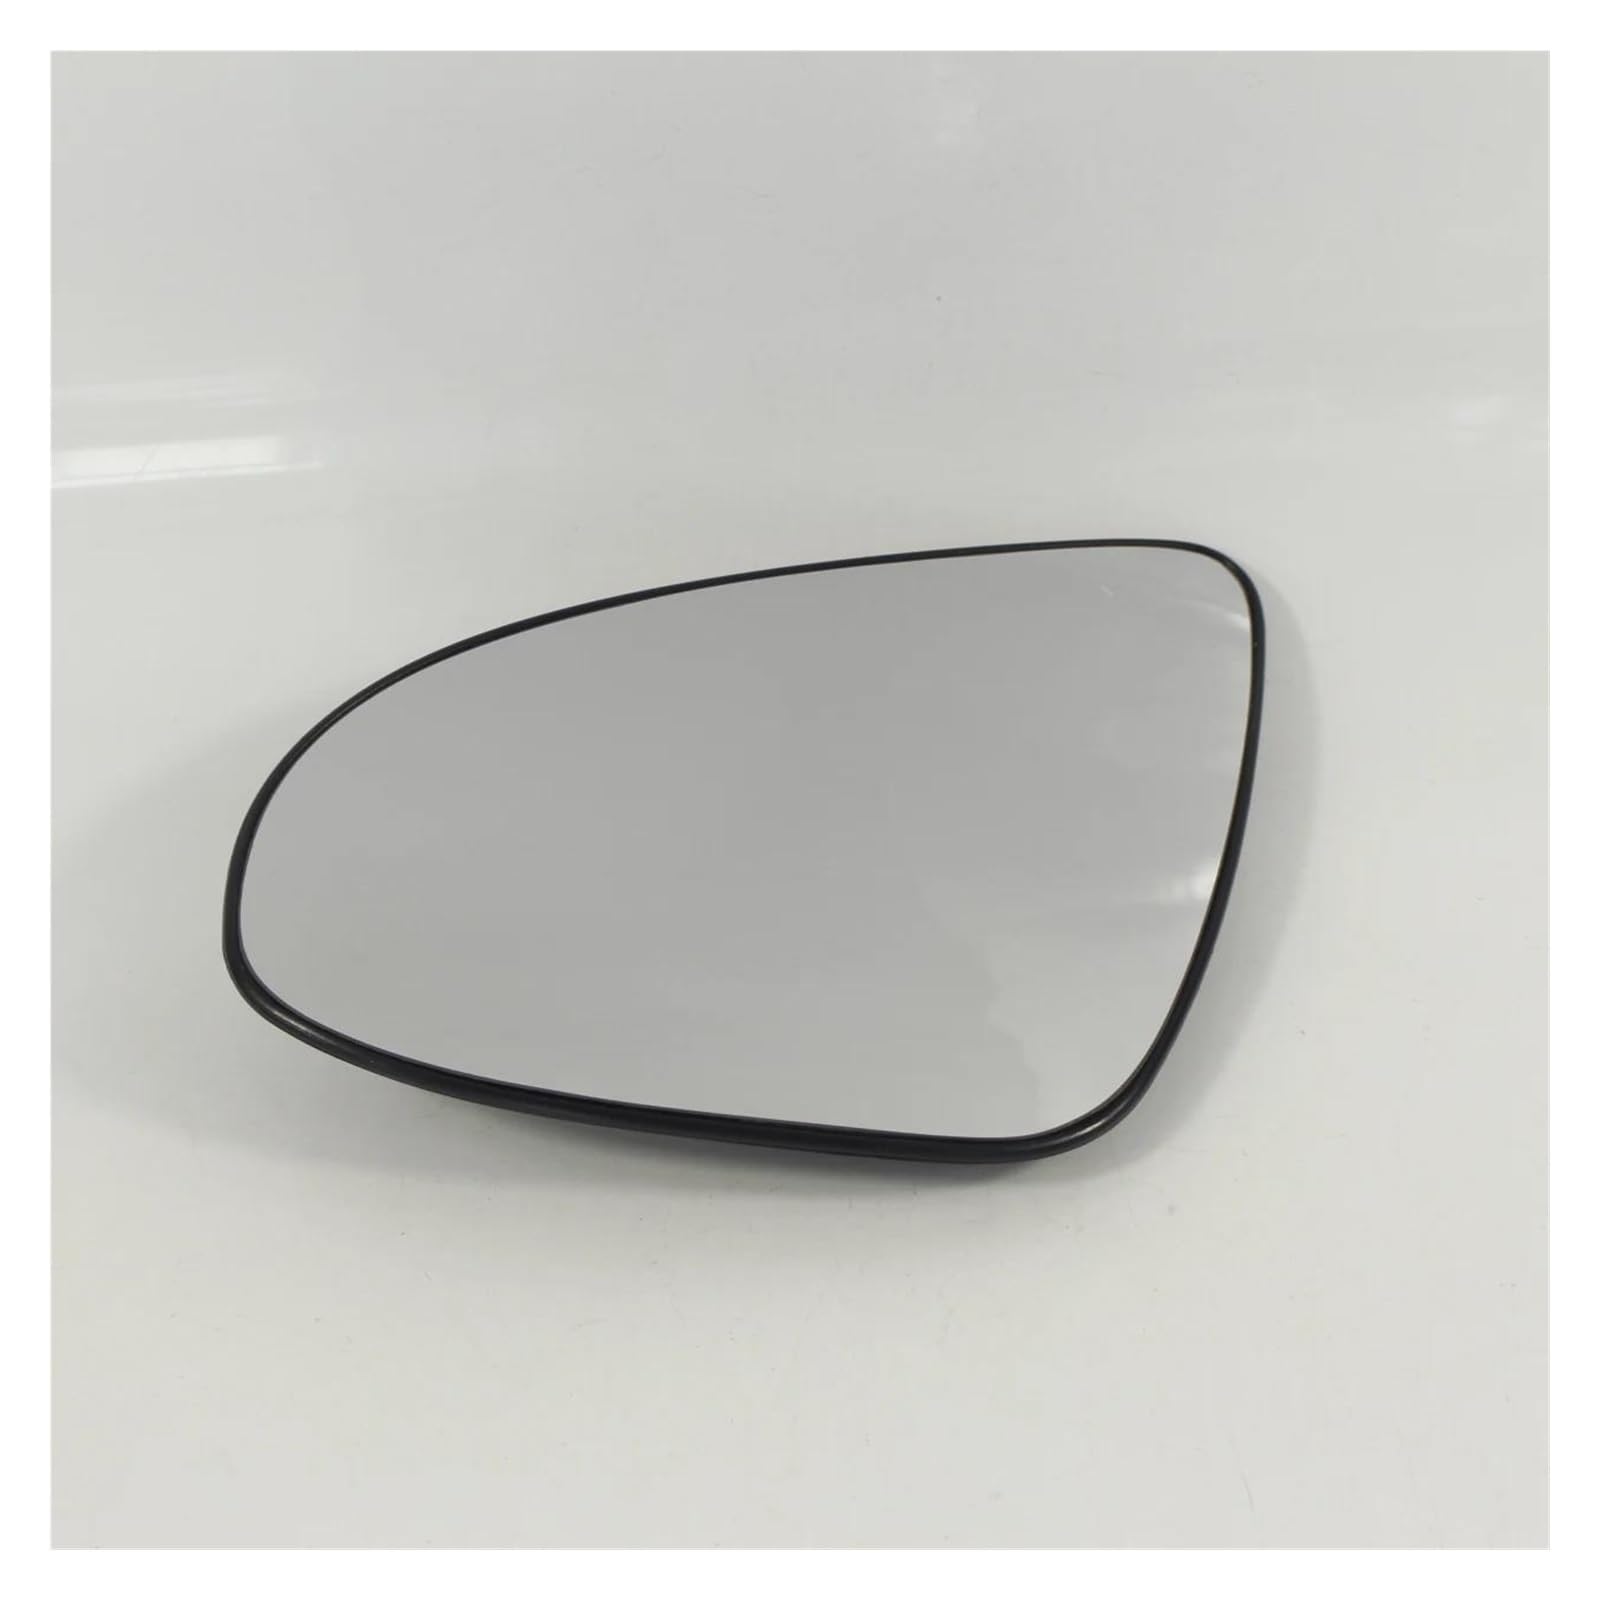 YAEGER Seitenspiegelglas Für Toyota Für Aygo 2014-2021 Beheizt Mit Zurück Plat Linke Seite/Auto Auto Flügel Tür Spiegel Glas Ersatz Außenspiegel Glas von YAEGER